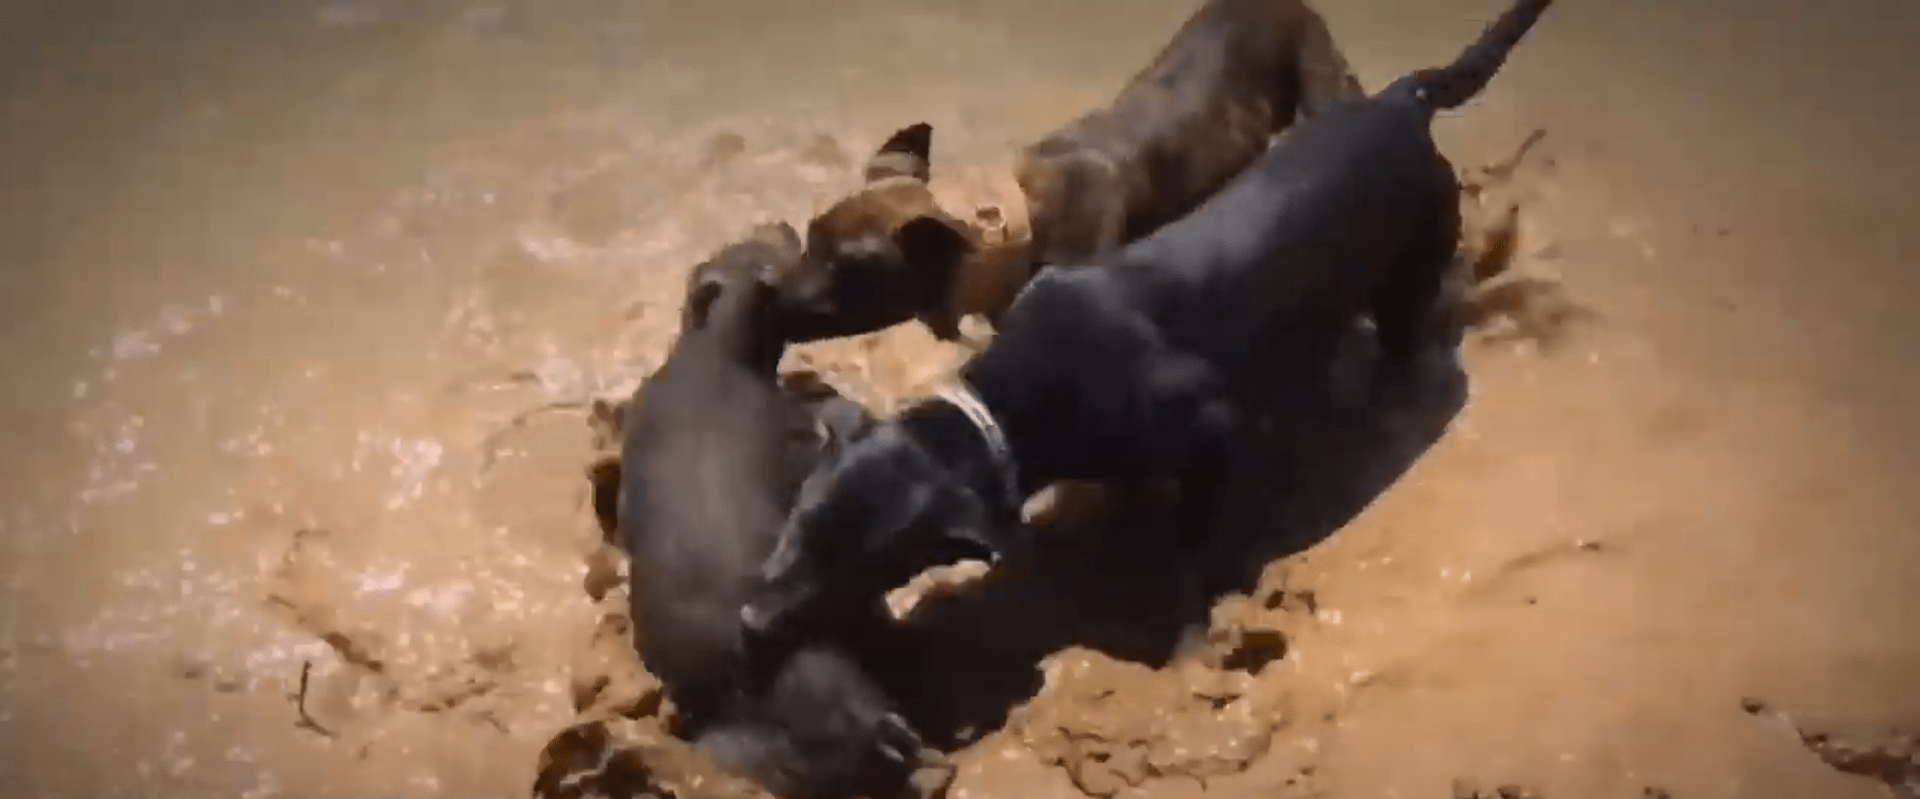 Záběry na psi zápasící mezi sebou i s jinými zvířaty tvoří velkou část odhalených videí. (Zdroj: Screenshot YT)